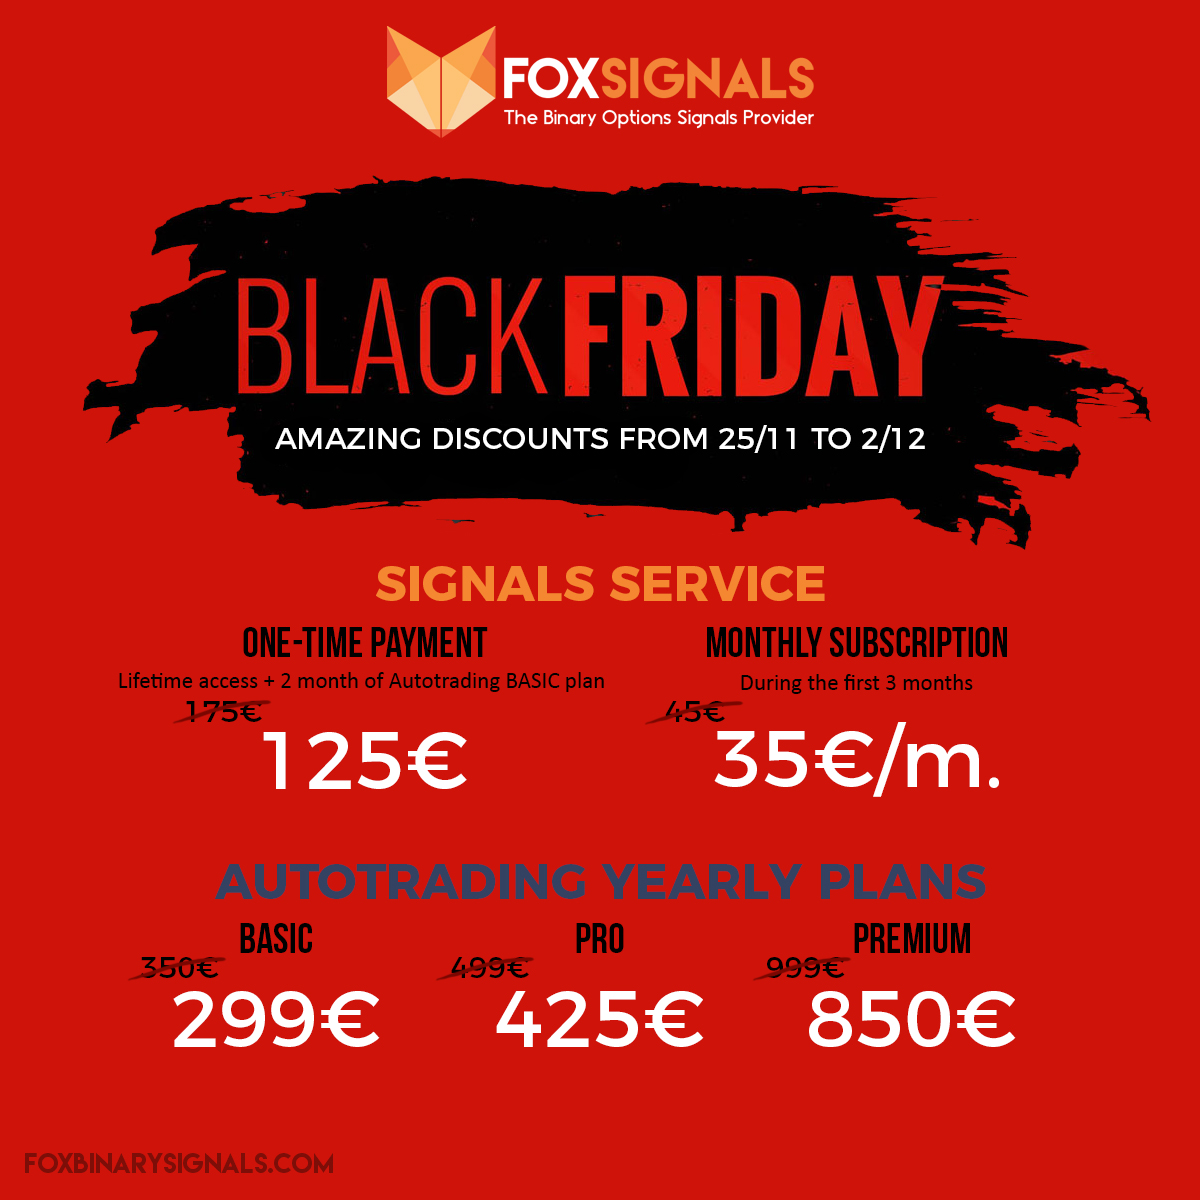 Fox Signals BlackFriday